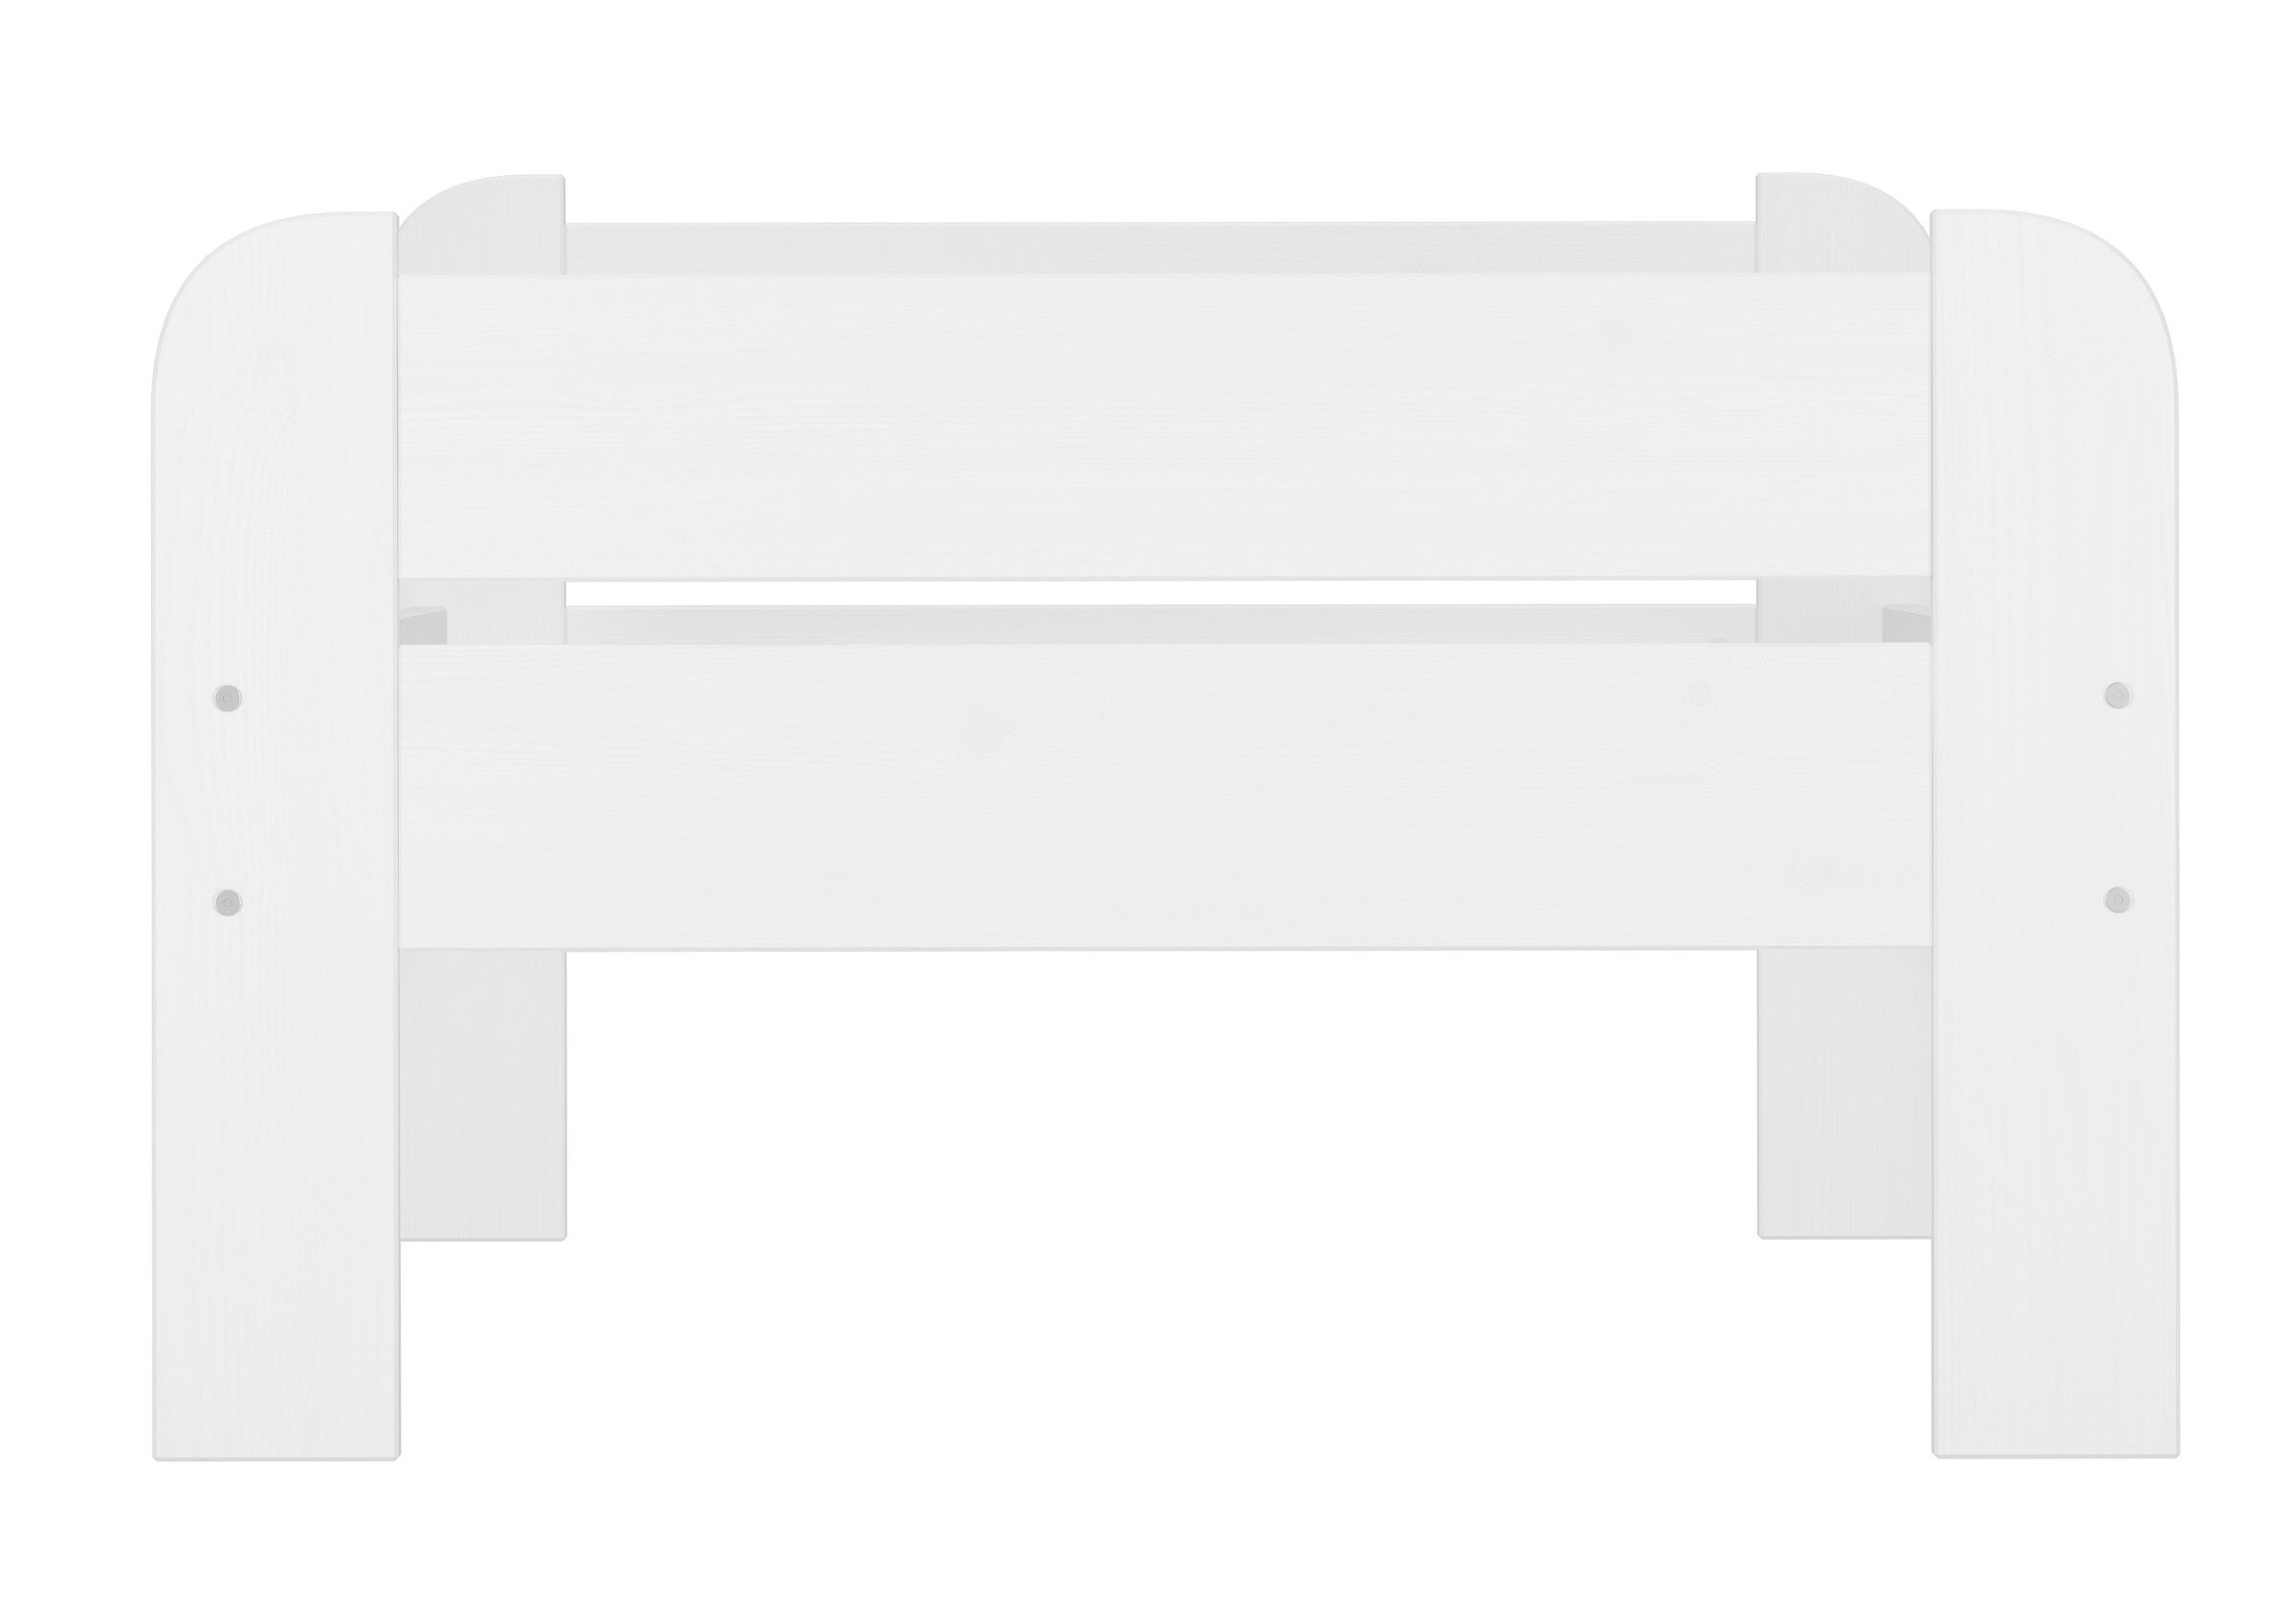 Tre varianti di letto bianco x ADULTI a una piazza 90x200 in Pino massello V-60.39-09W